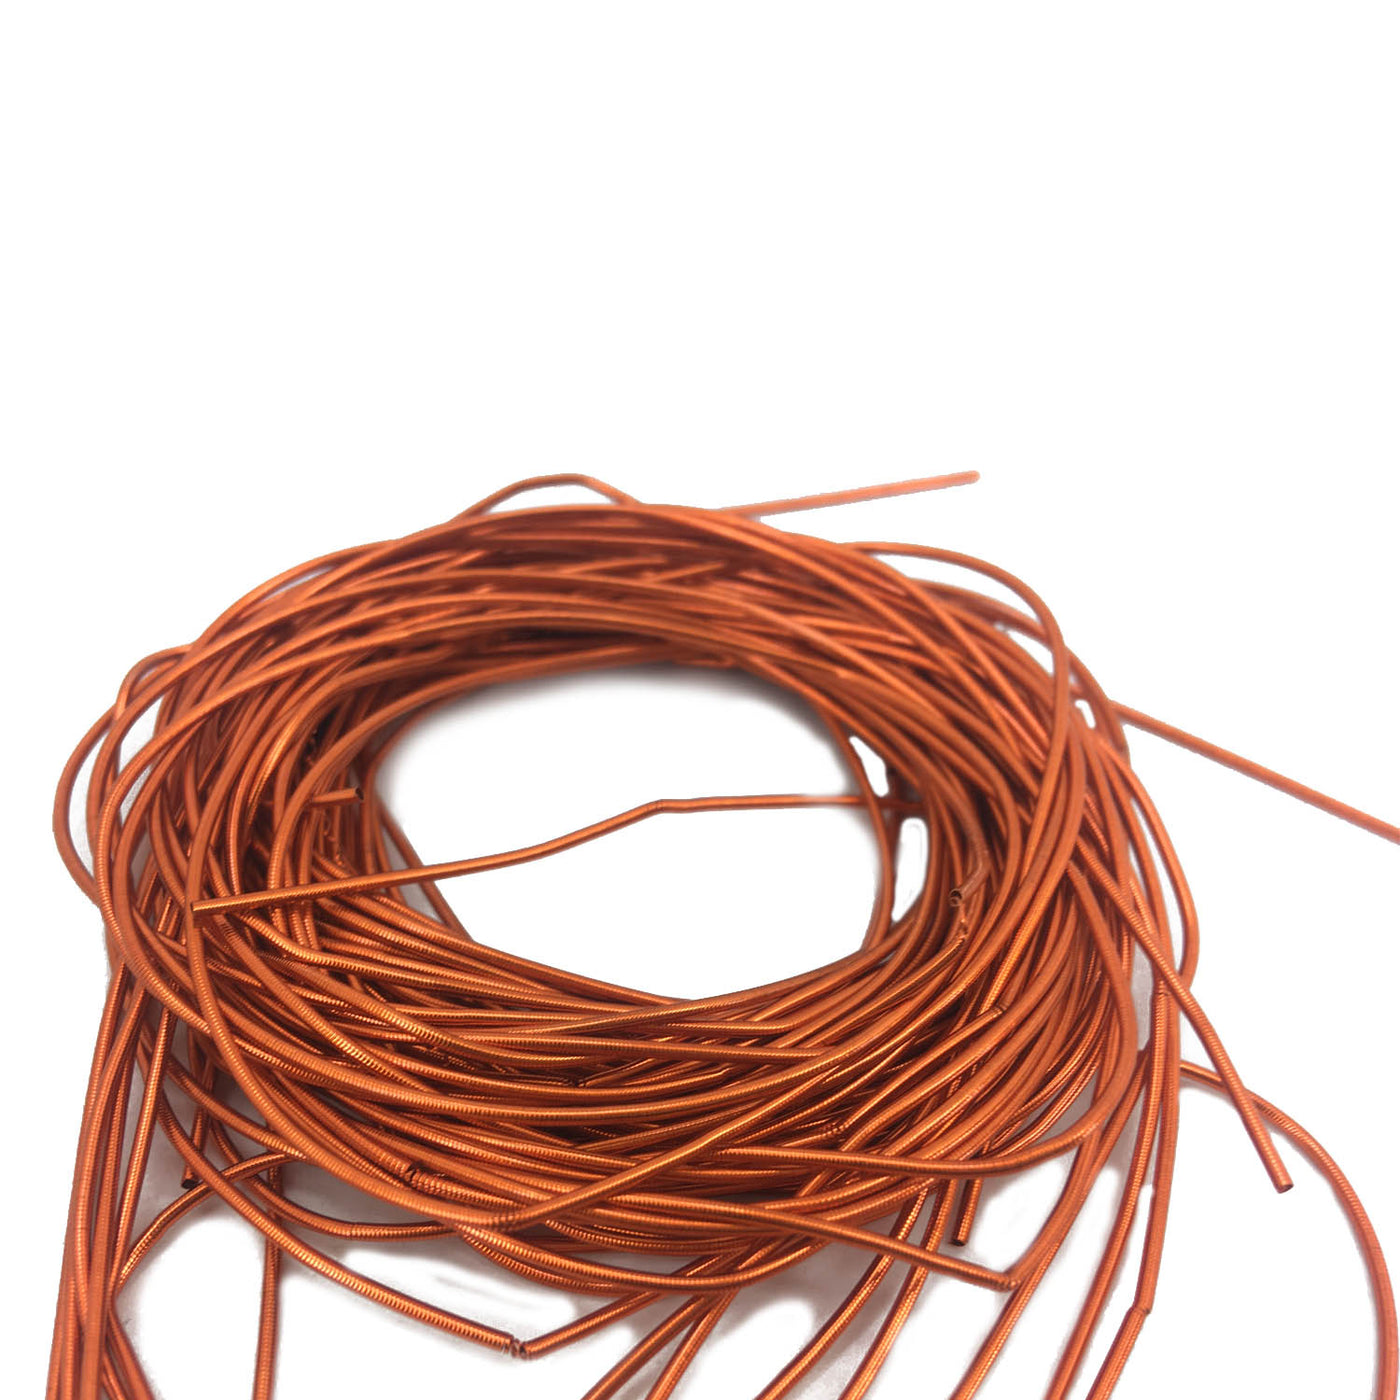 Multicolor Bullion Wires Copper Metallic Thread